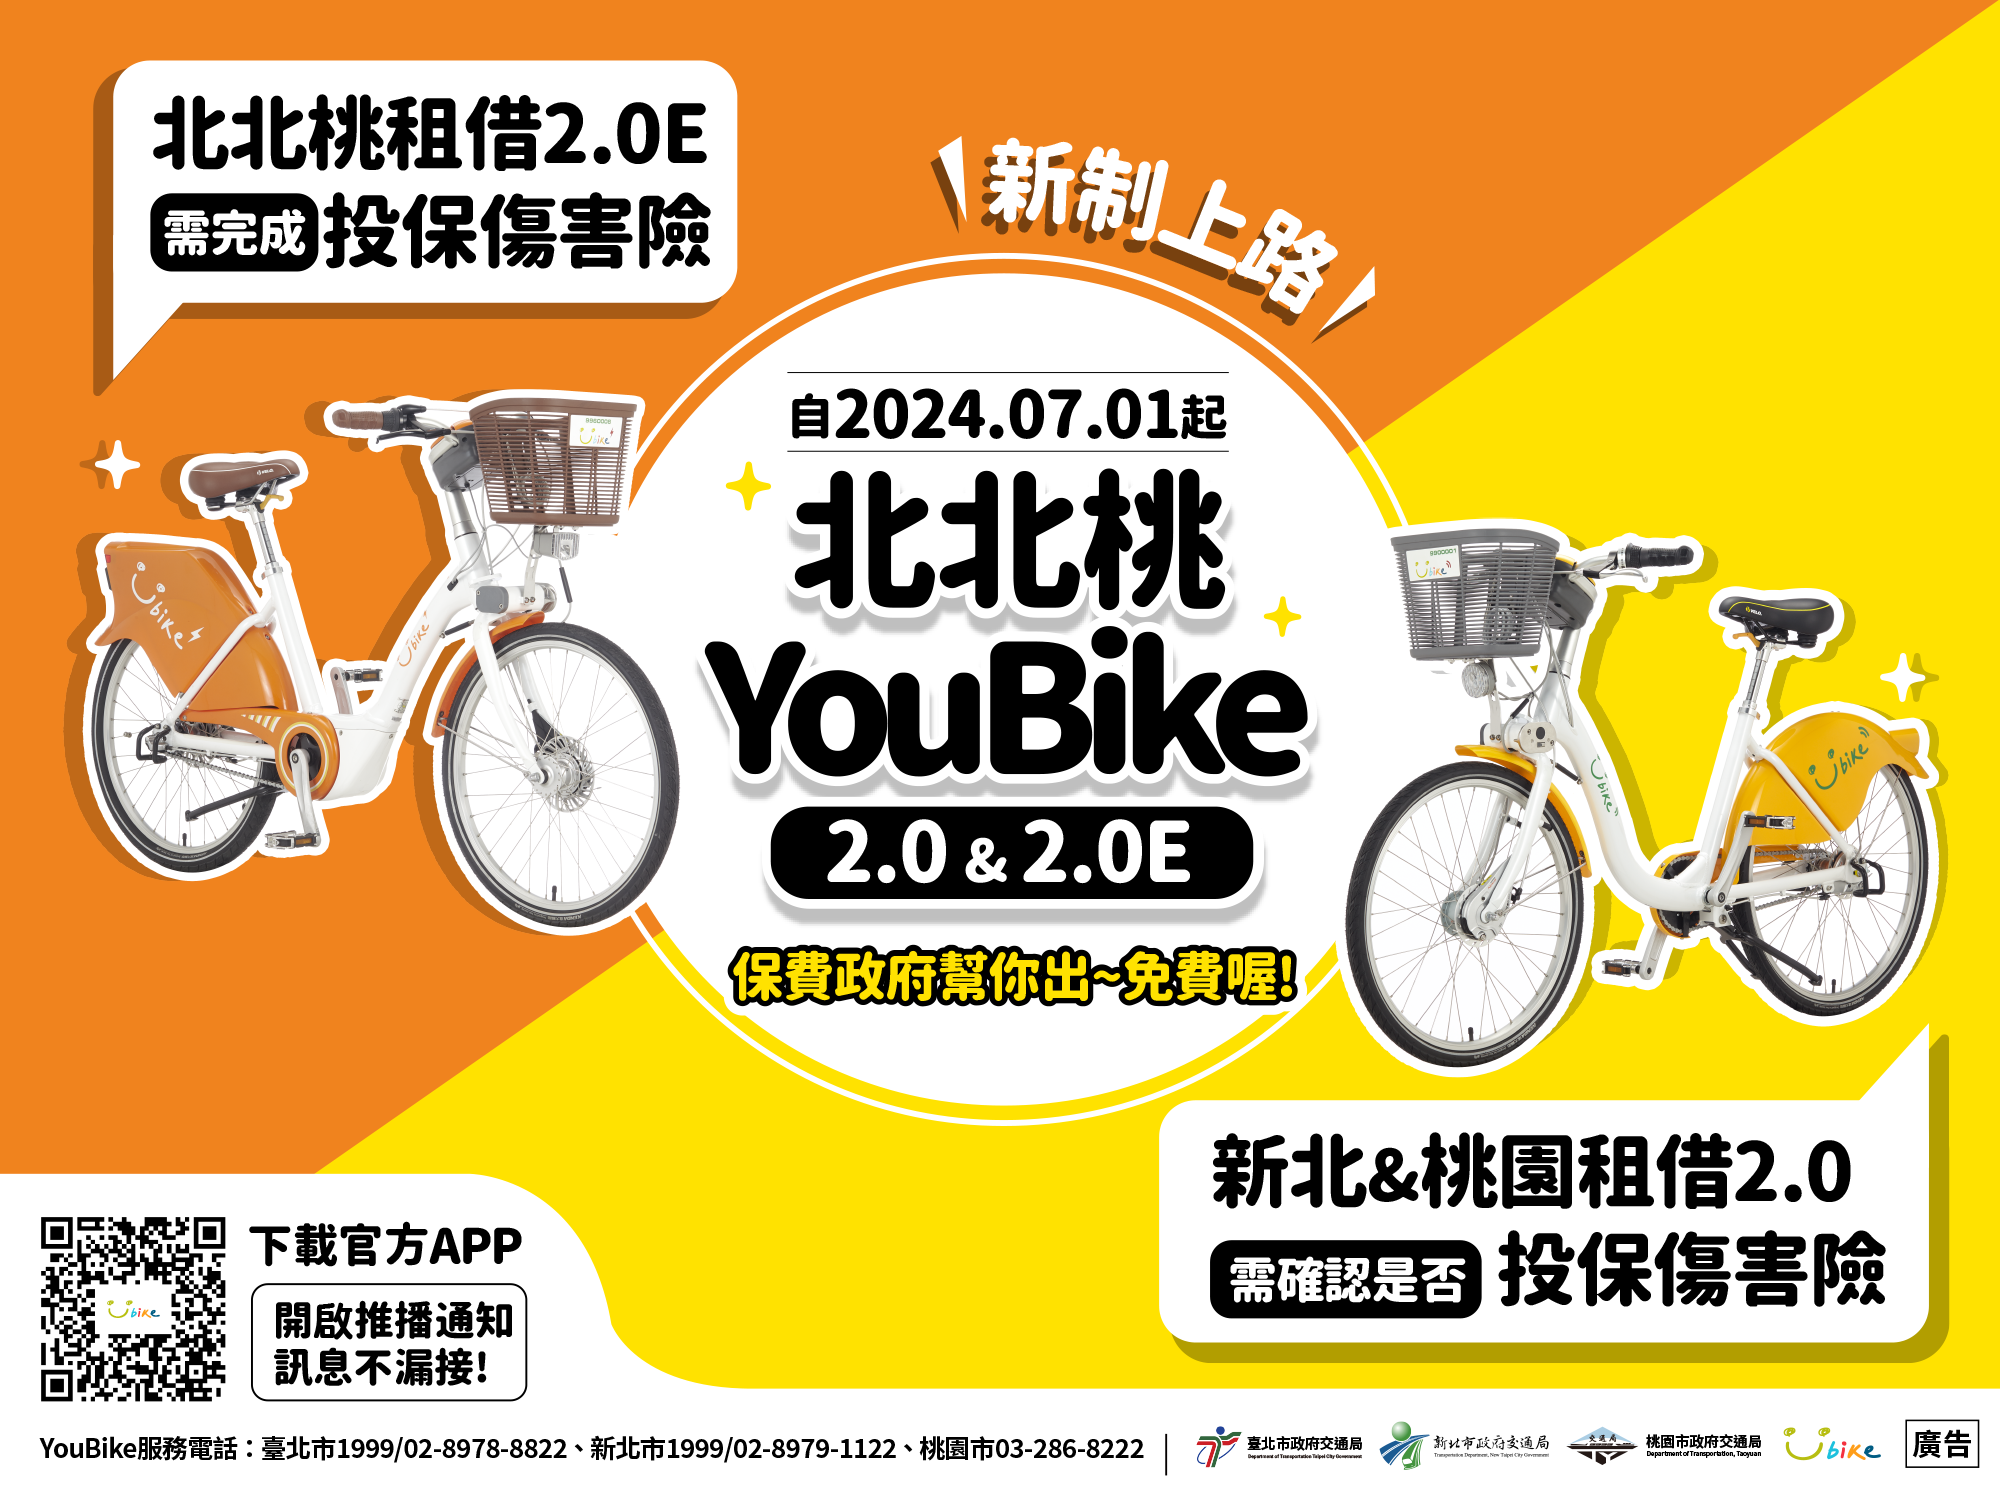 中国台湾地区 YouBike 公共自行車服務